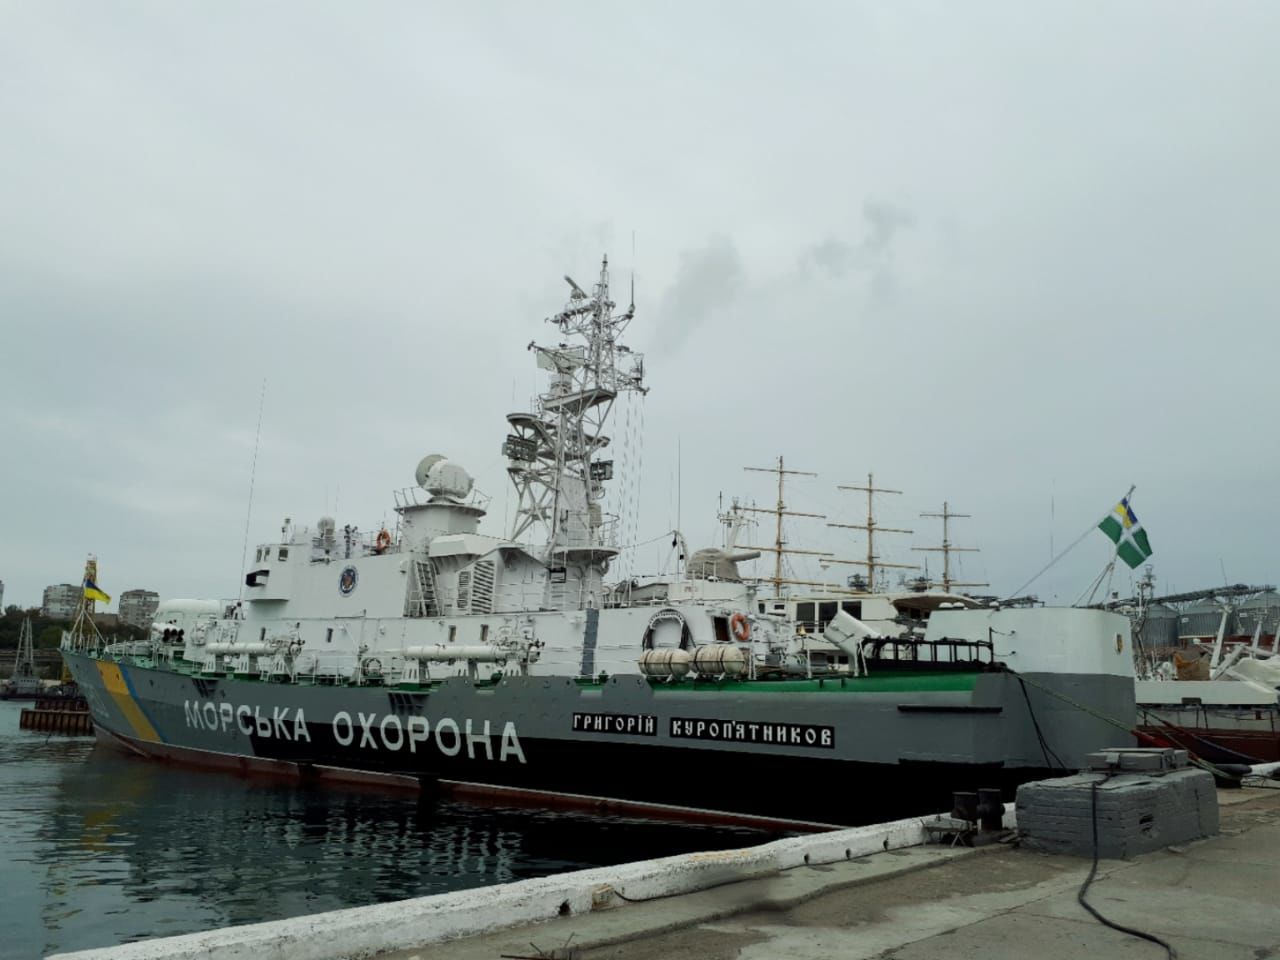 Впервые украинский флагман морской охраны плывет к берегам Турции